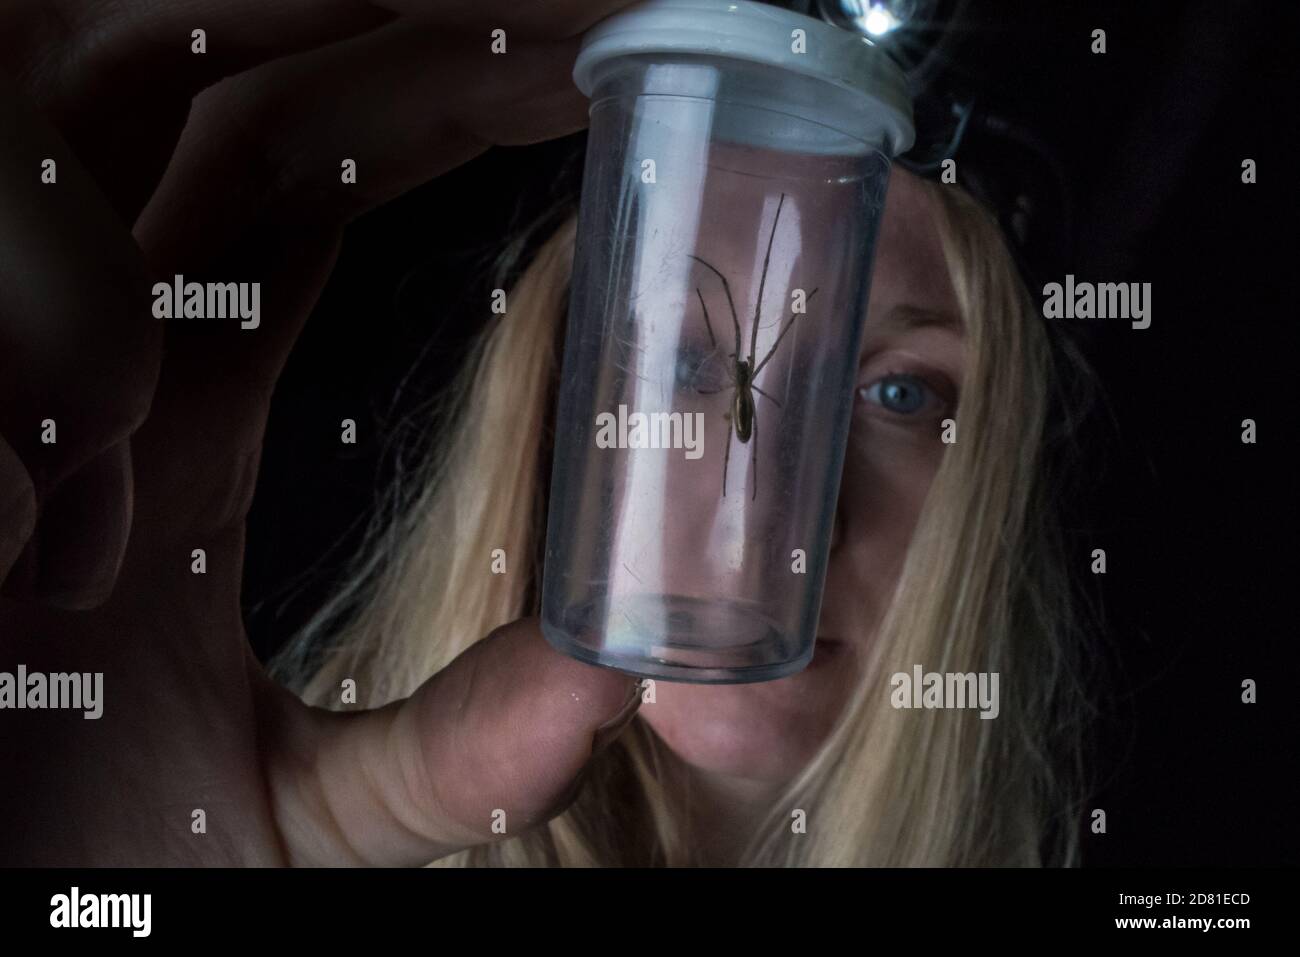 Un scientifique examine une araignée capturée dans un bocal comme partie d'une étude scientifique Banque D'Images